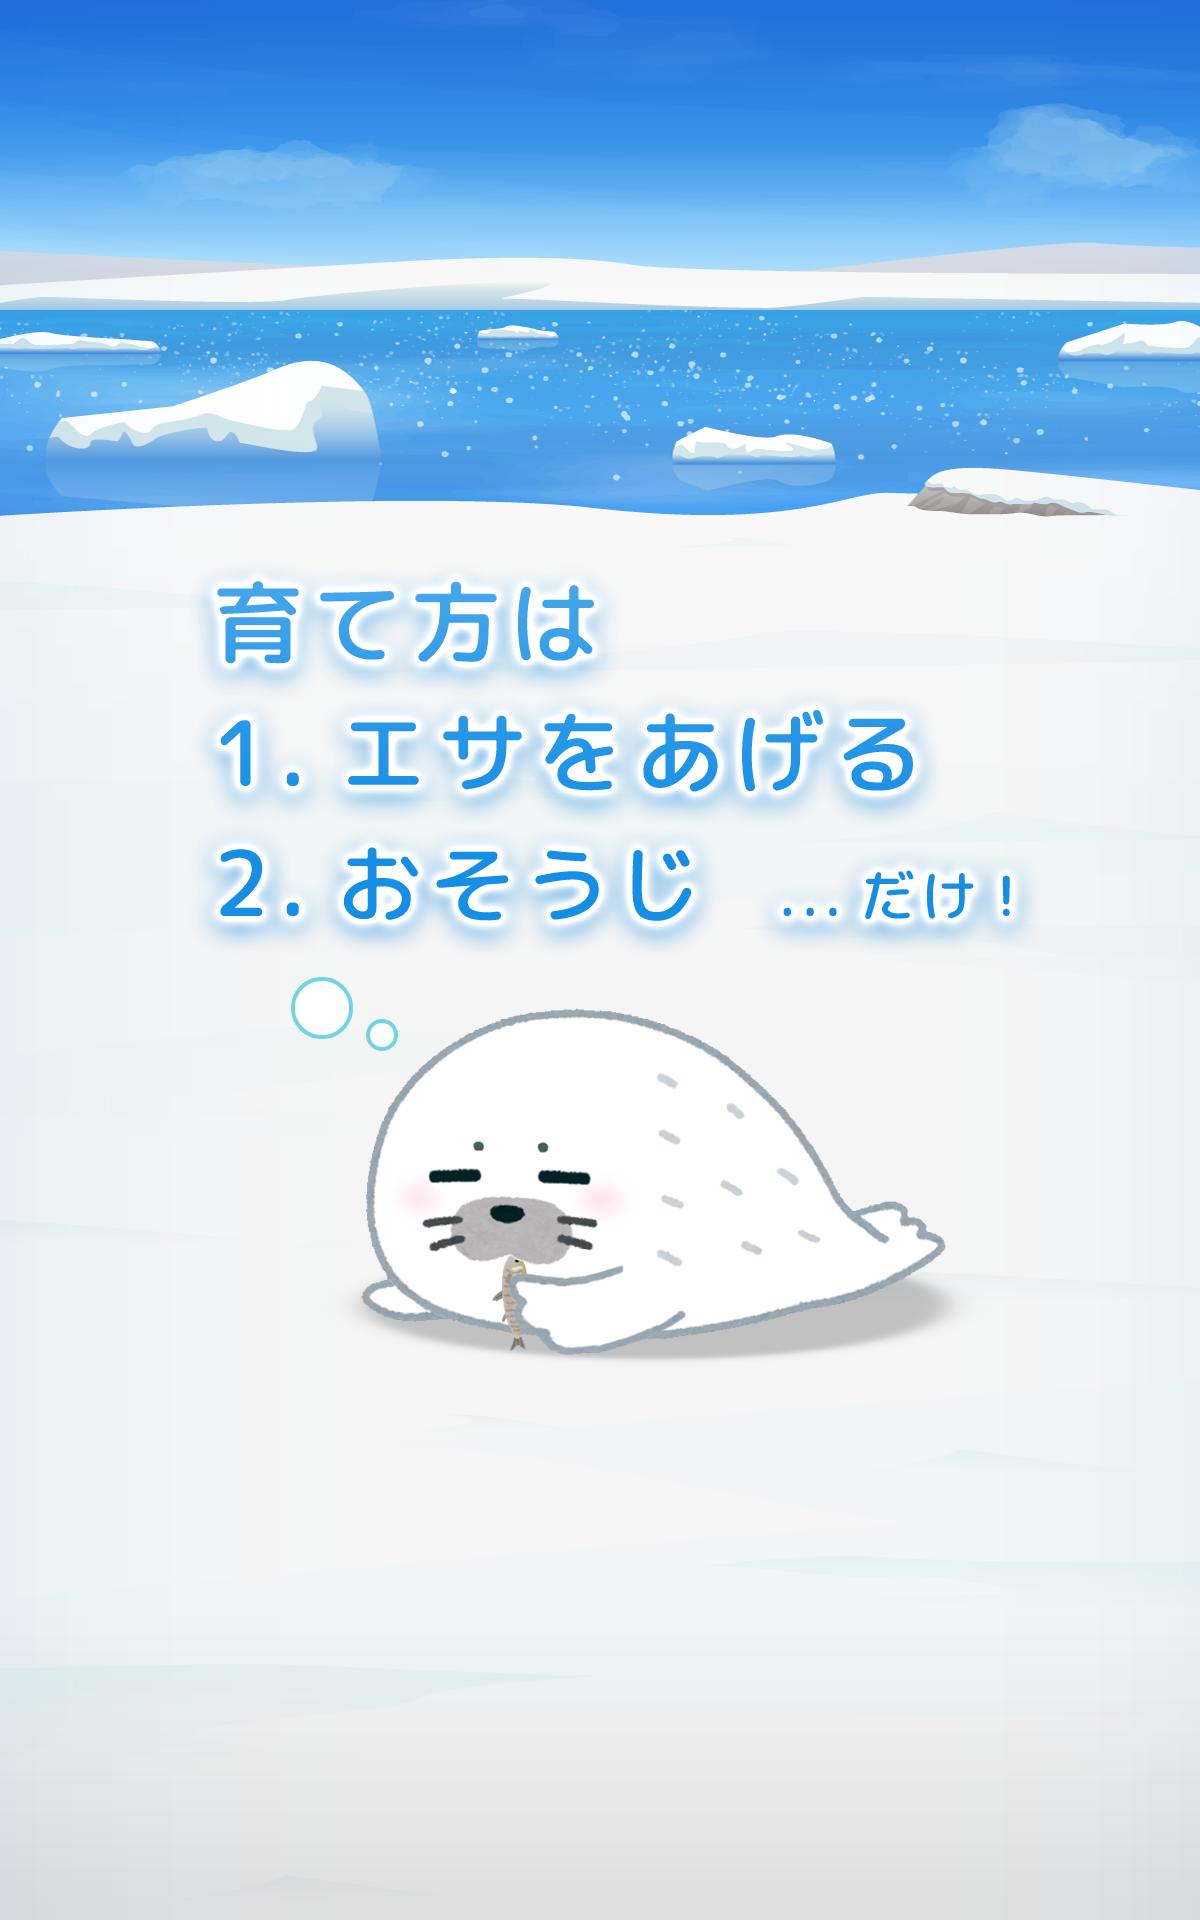 アザラシ育成ゲーム かわいい癒しのアプリ For Android Apk Download